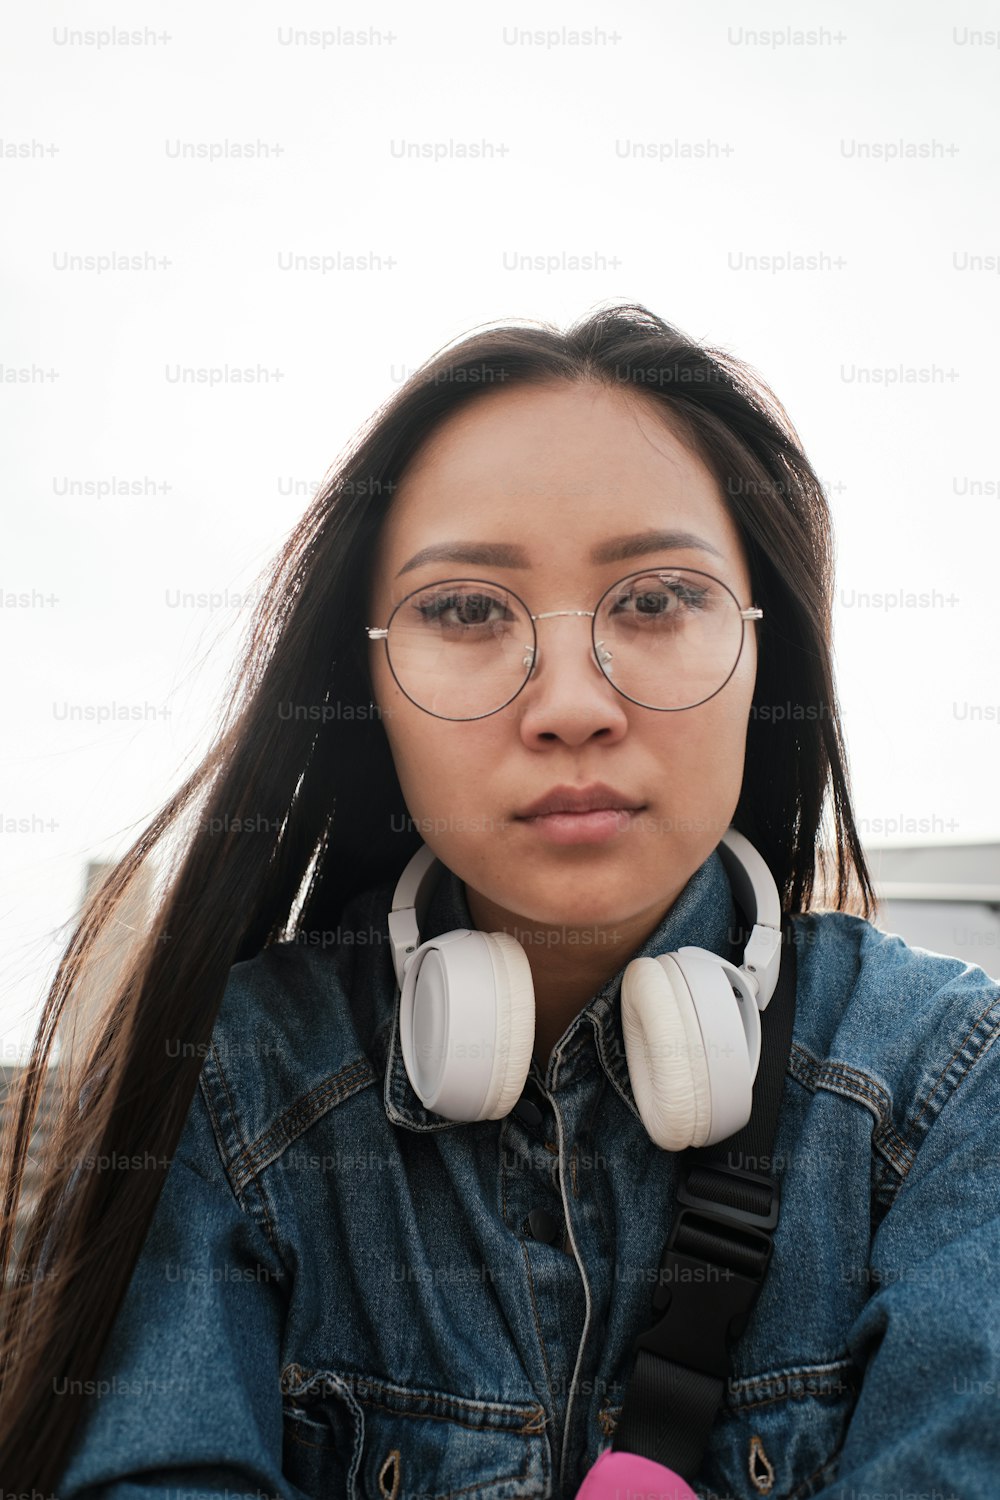 Retrato de uma menina asiática usando óculos e fones de ouvido olhando diretamente para a câmera.